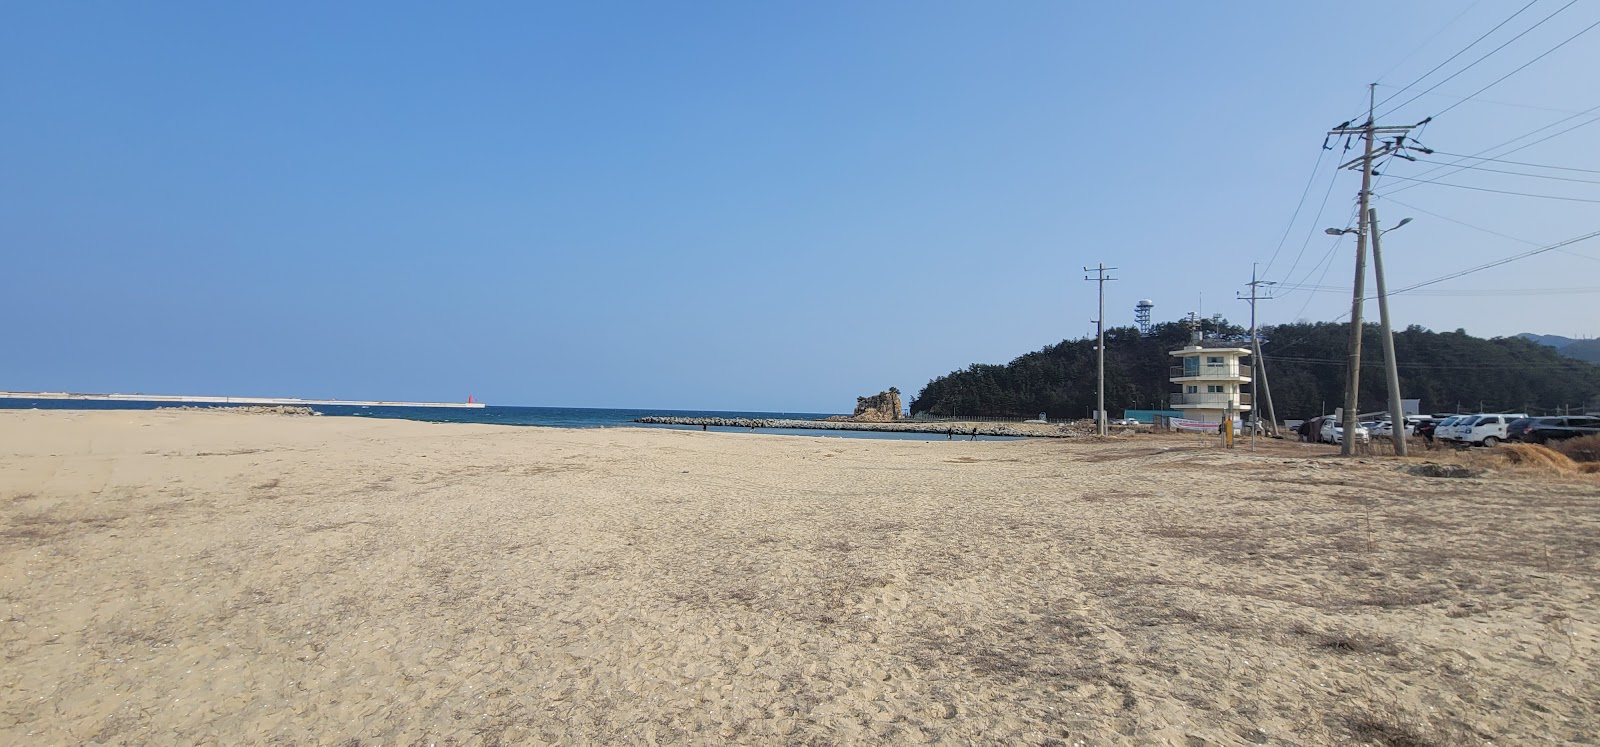 Zdjęcie Uljinitis Jeon Beach - popularne miejsce wśród znawców relaksu